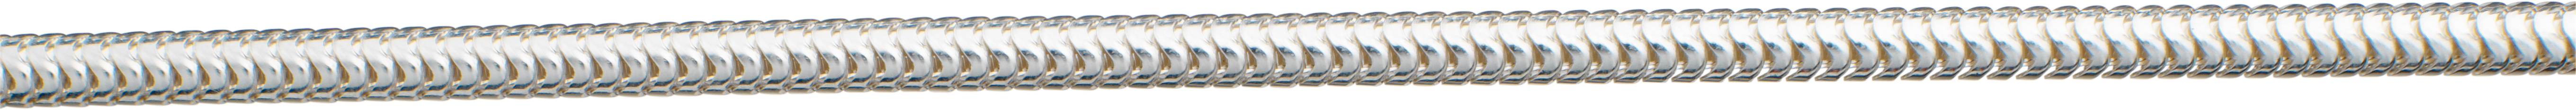 slangenketting zilver 925/- Ø 3,20mm